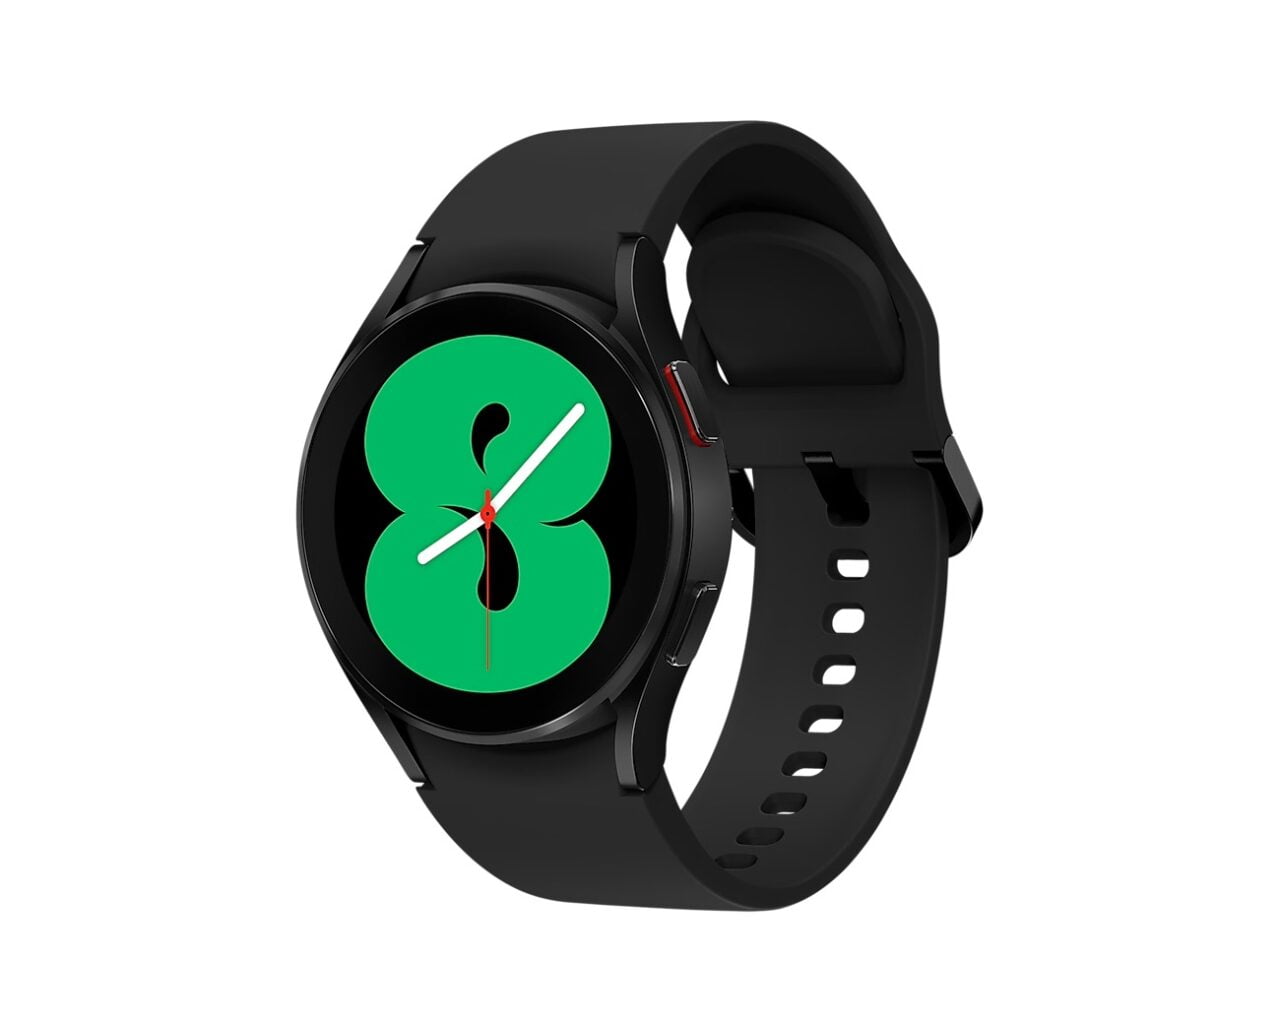 Czarny inteligentny zegarek na białym tle, z ekranem wyświetlającym grafikę zielonego jabłka i tradycyjne wskazówki zegara.